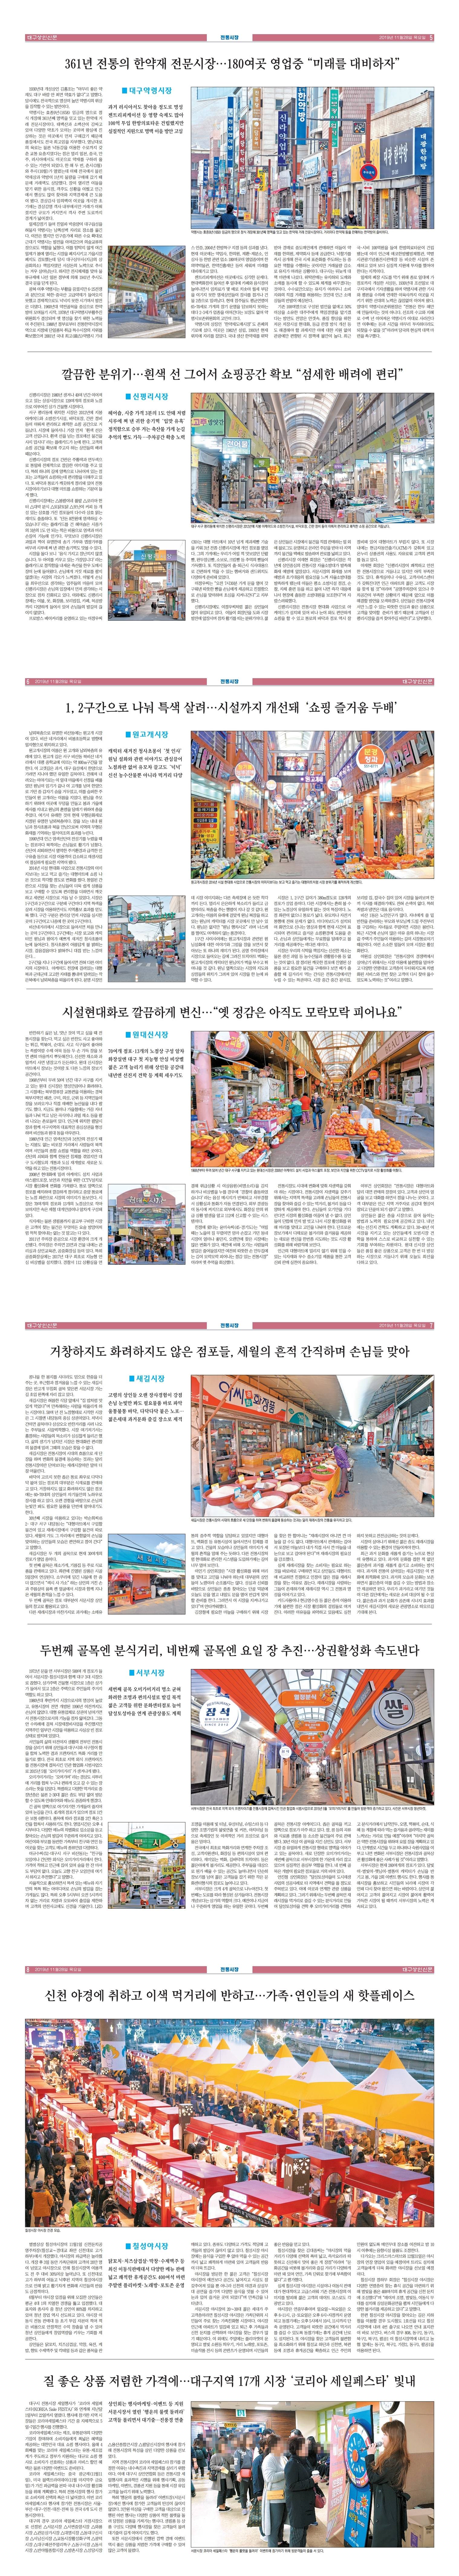 대구상인신문 2019 - 제3호(2019.11.28)